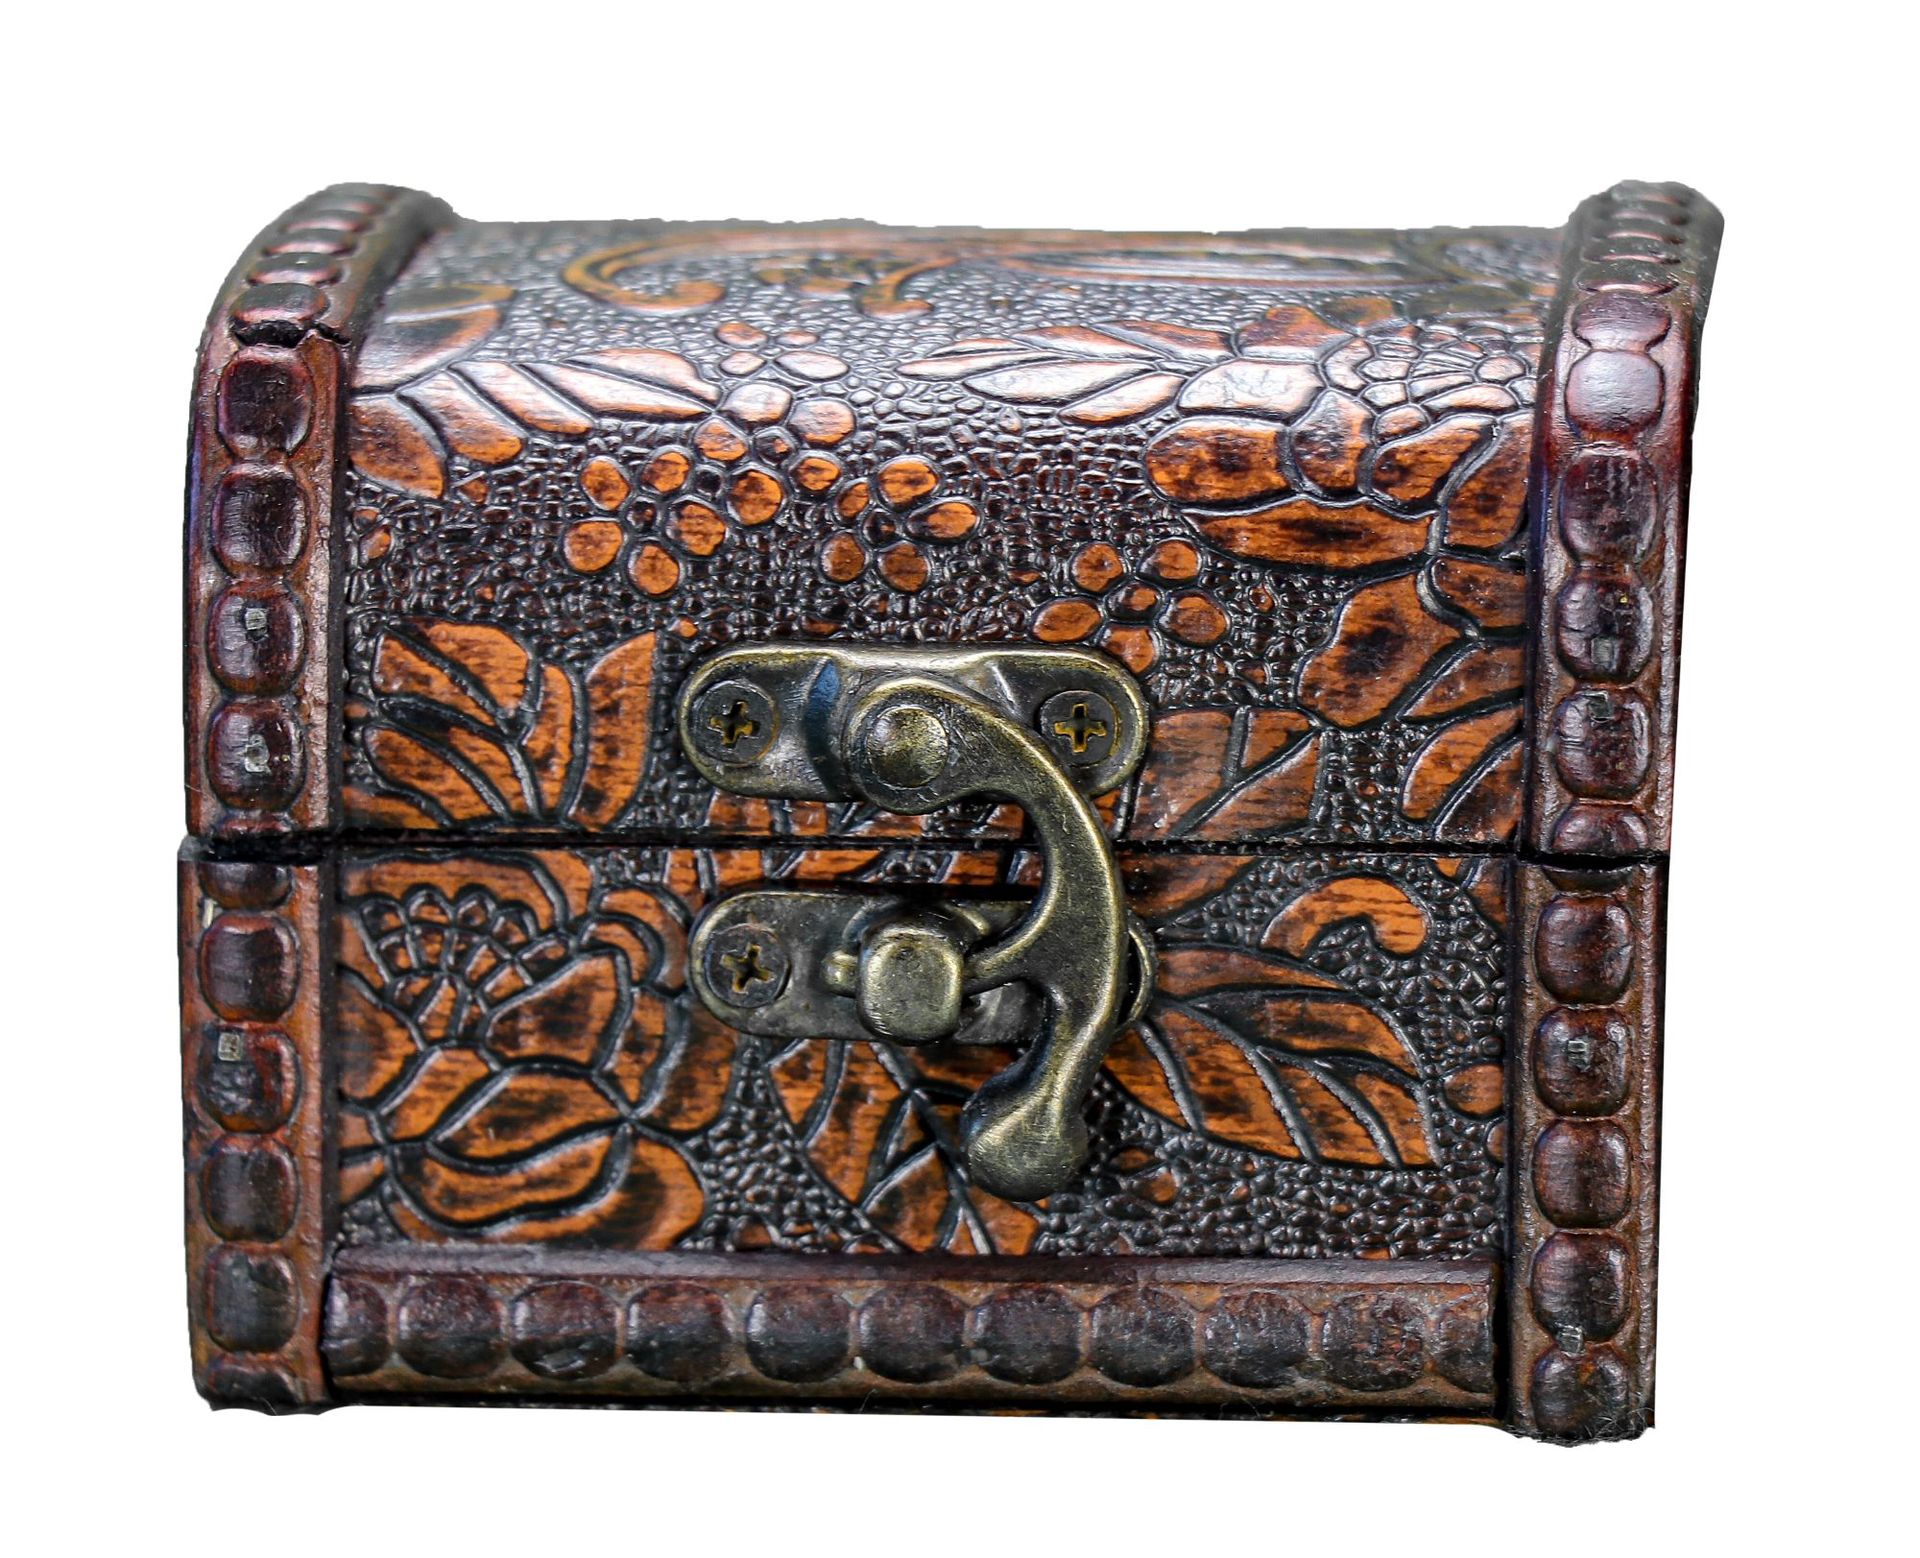 中式仿古首饰包装盒 木质工艺品礼品首饰收藏盒 现货